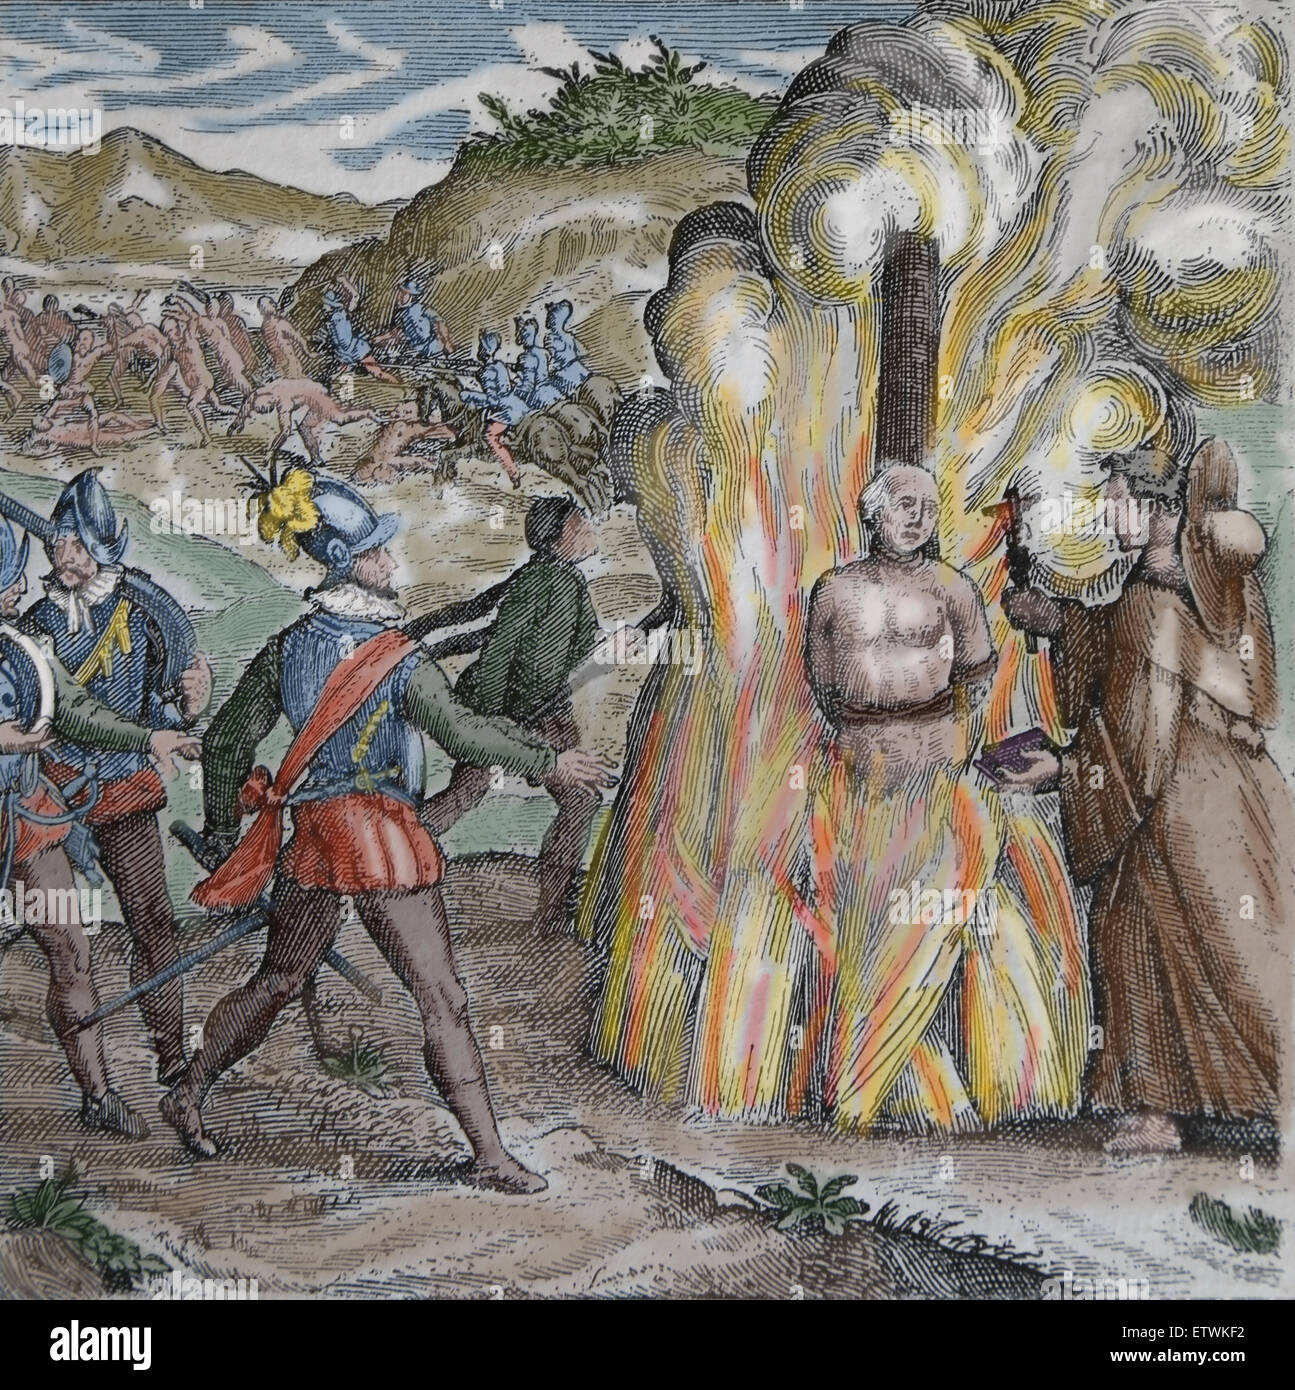 Bartolomé de las casas, la destrucción de las Indias. Jefe Taino Hatuey siendo quemados por soldados españoles. Color. Grabado. Foto de stock